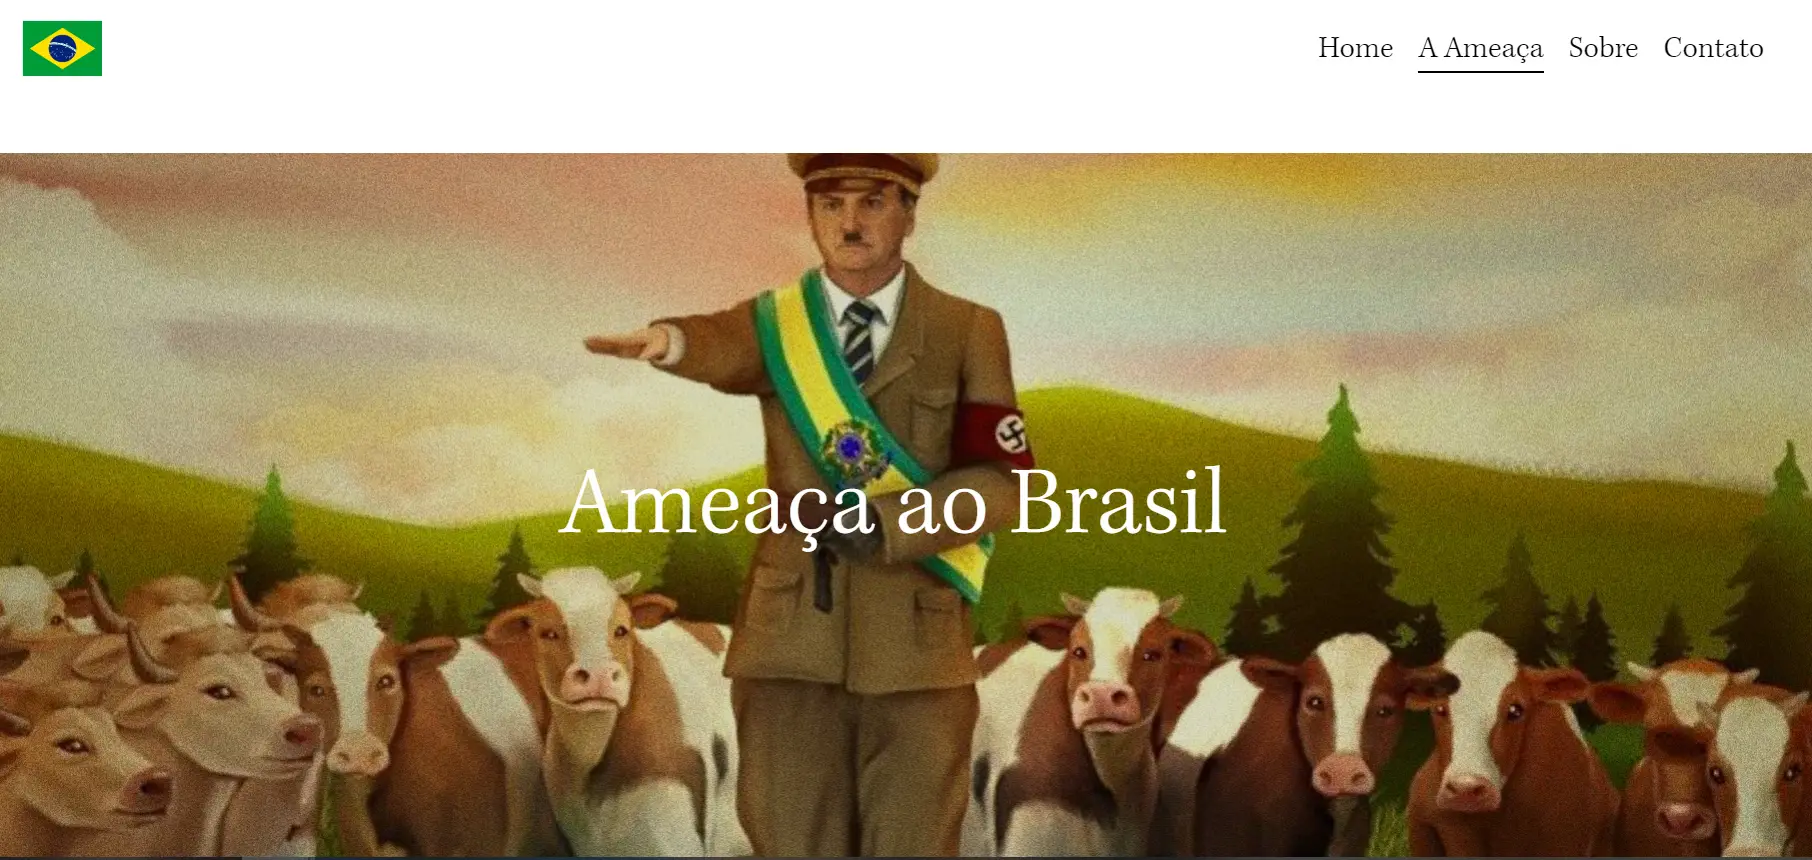 Site bolsonaro.com.br transforma-se em manifesto contra Presidente brasileiro